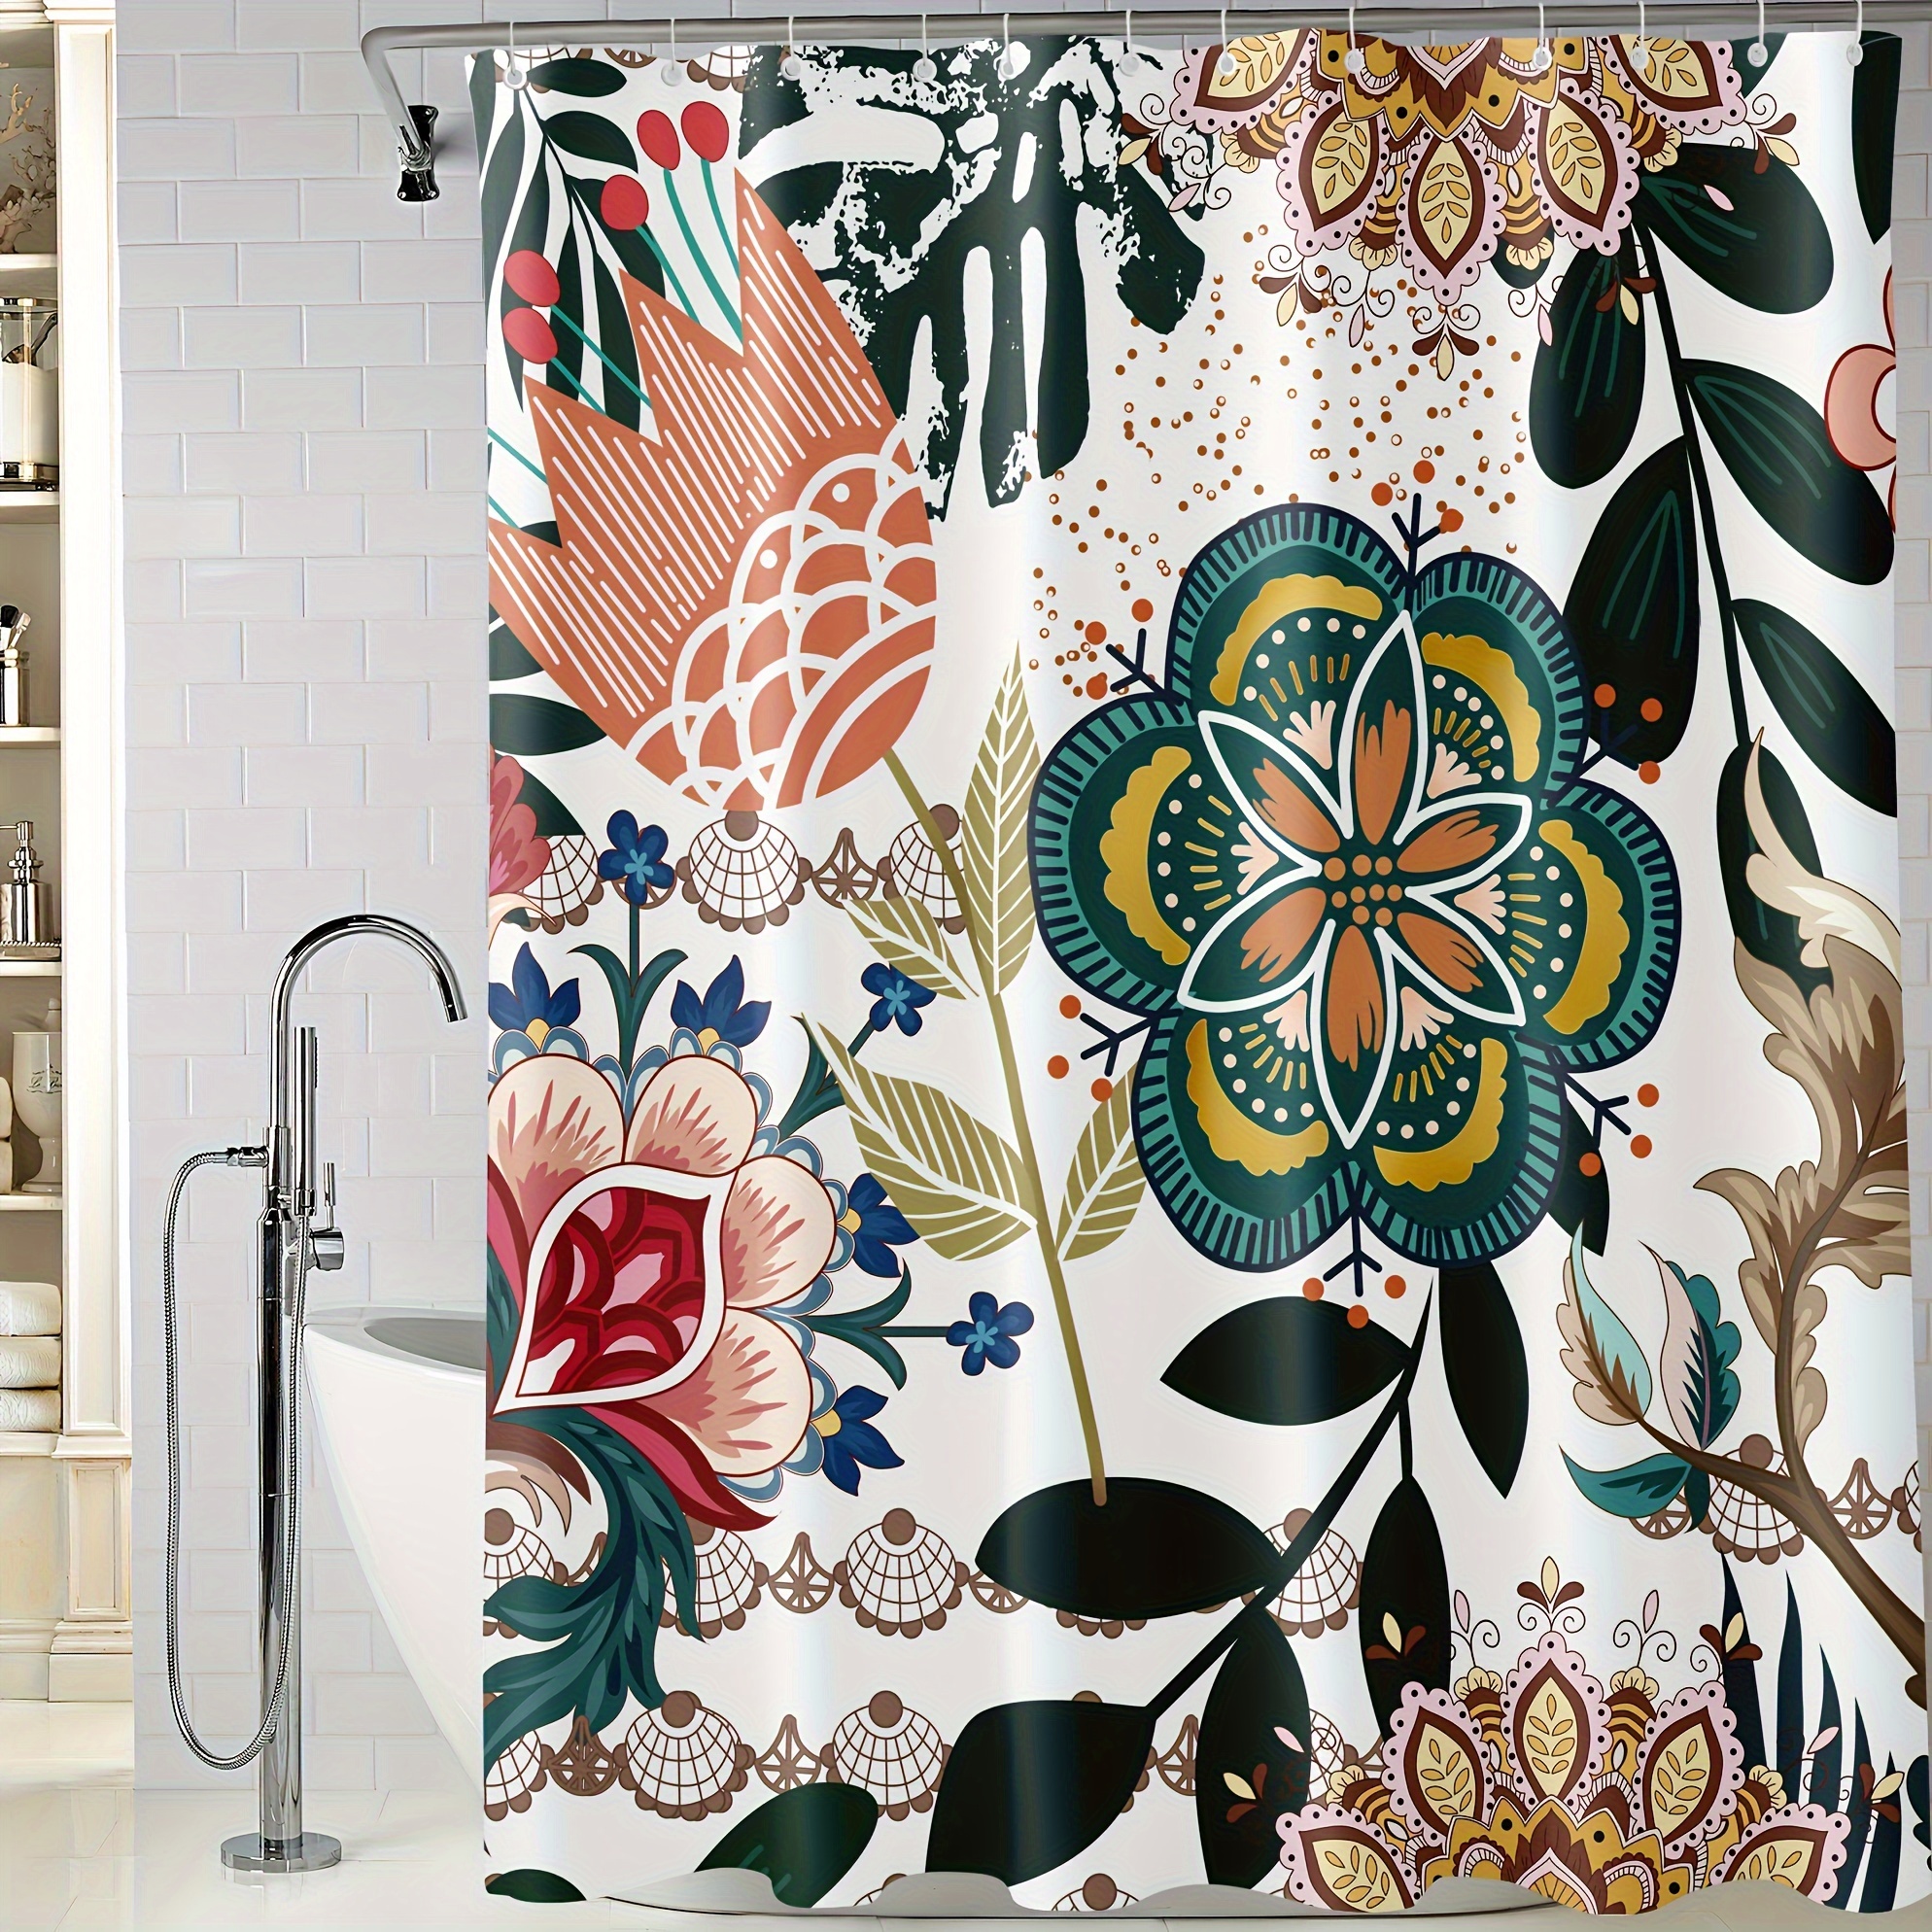 Set 4 pièces tapis de salle de bain + rideau motif feuilles de